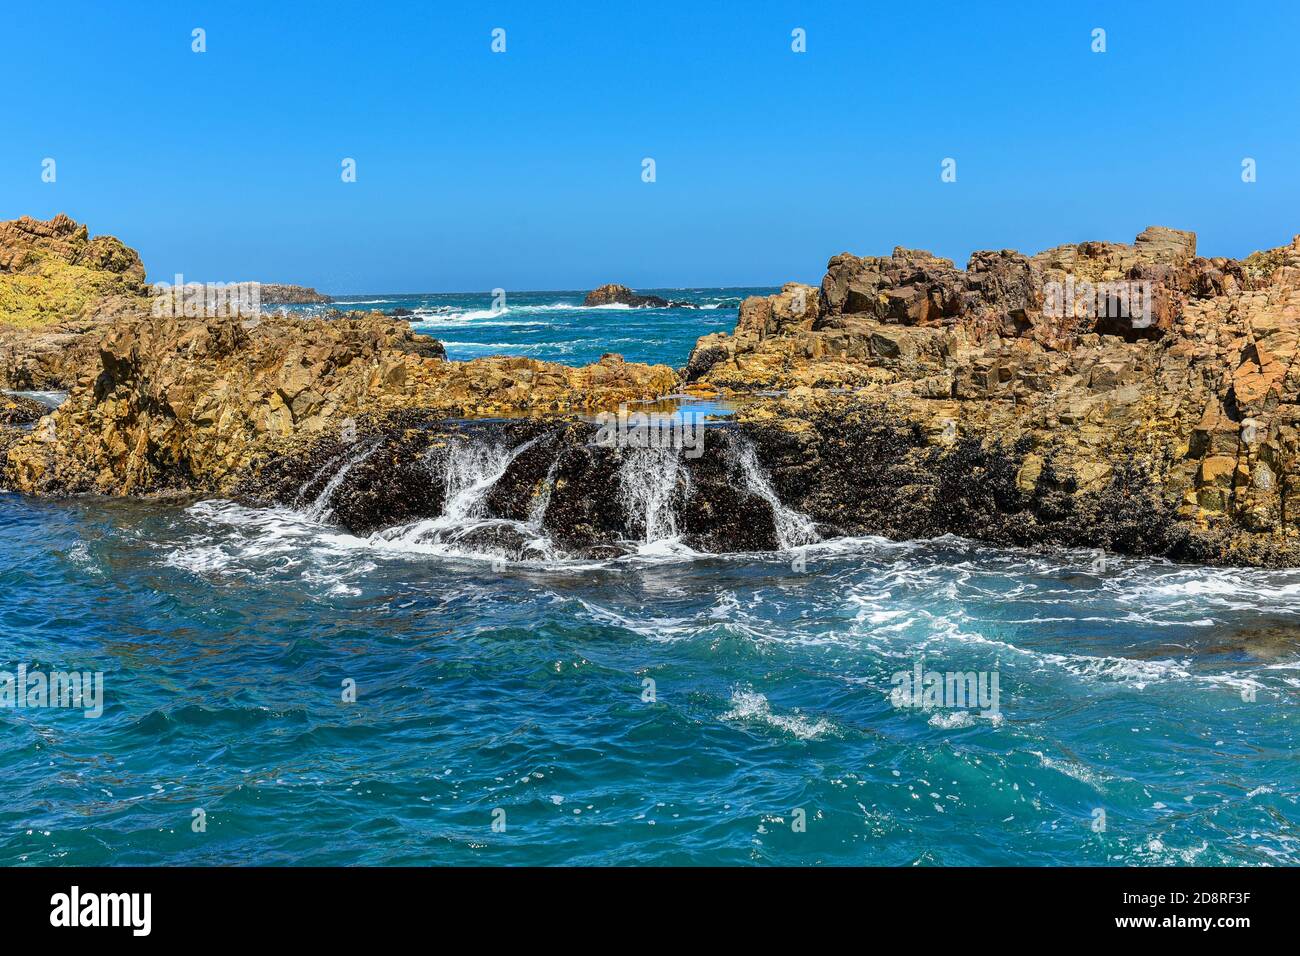 Rochers dans la mer, Knysna Heads, Garden route, Afrique du Sud Banque D'Images